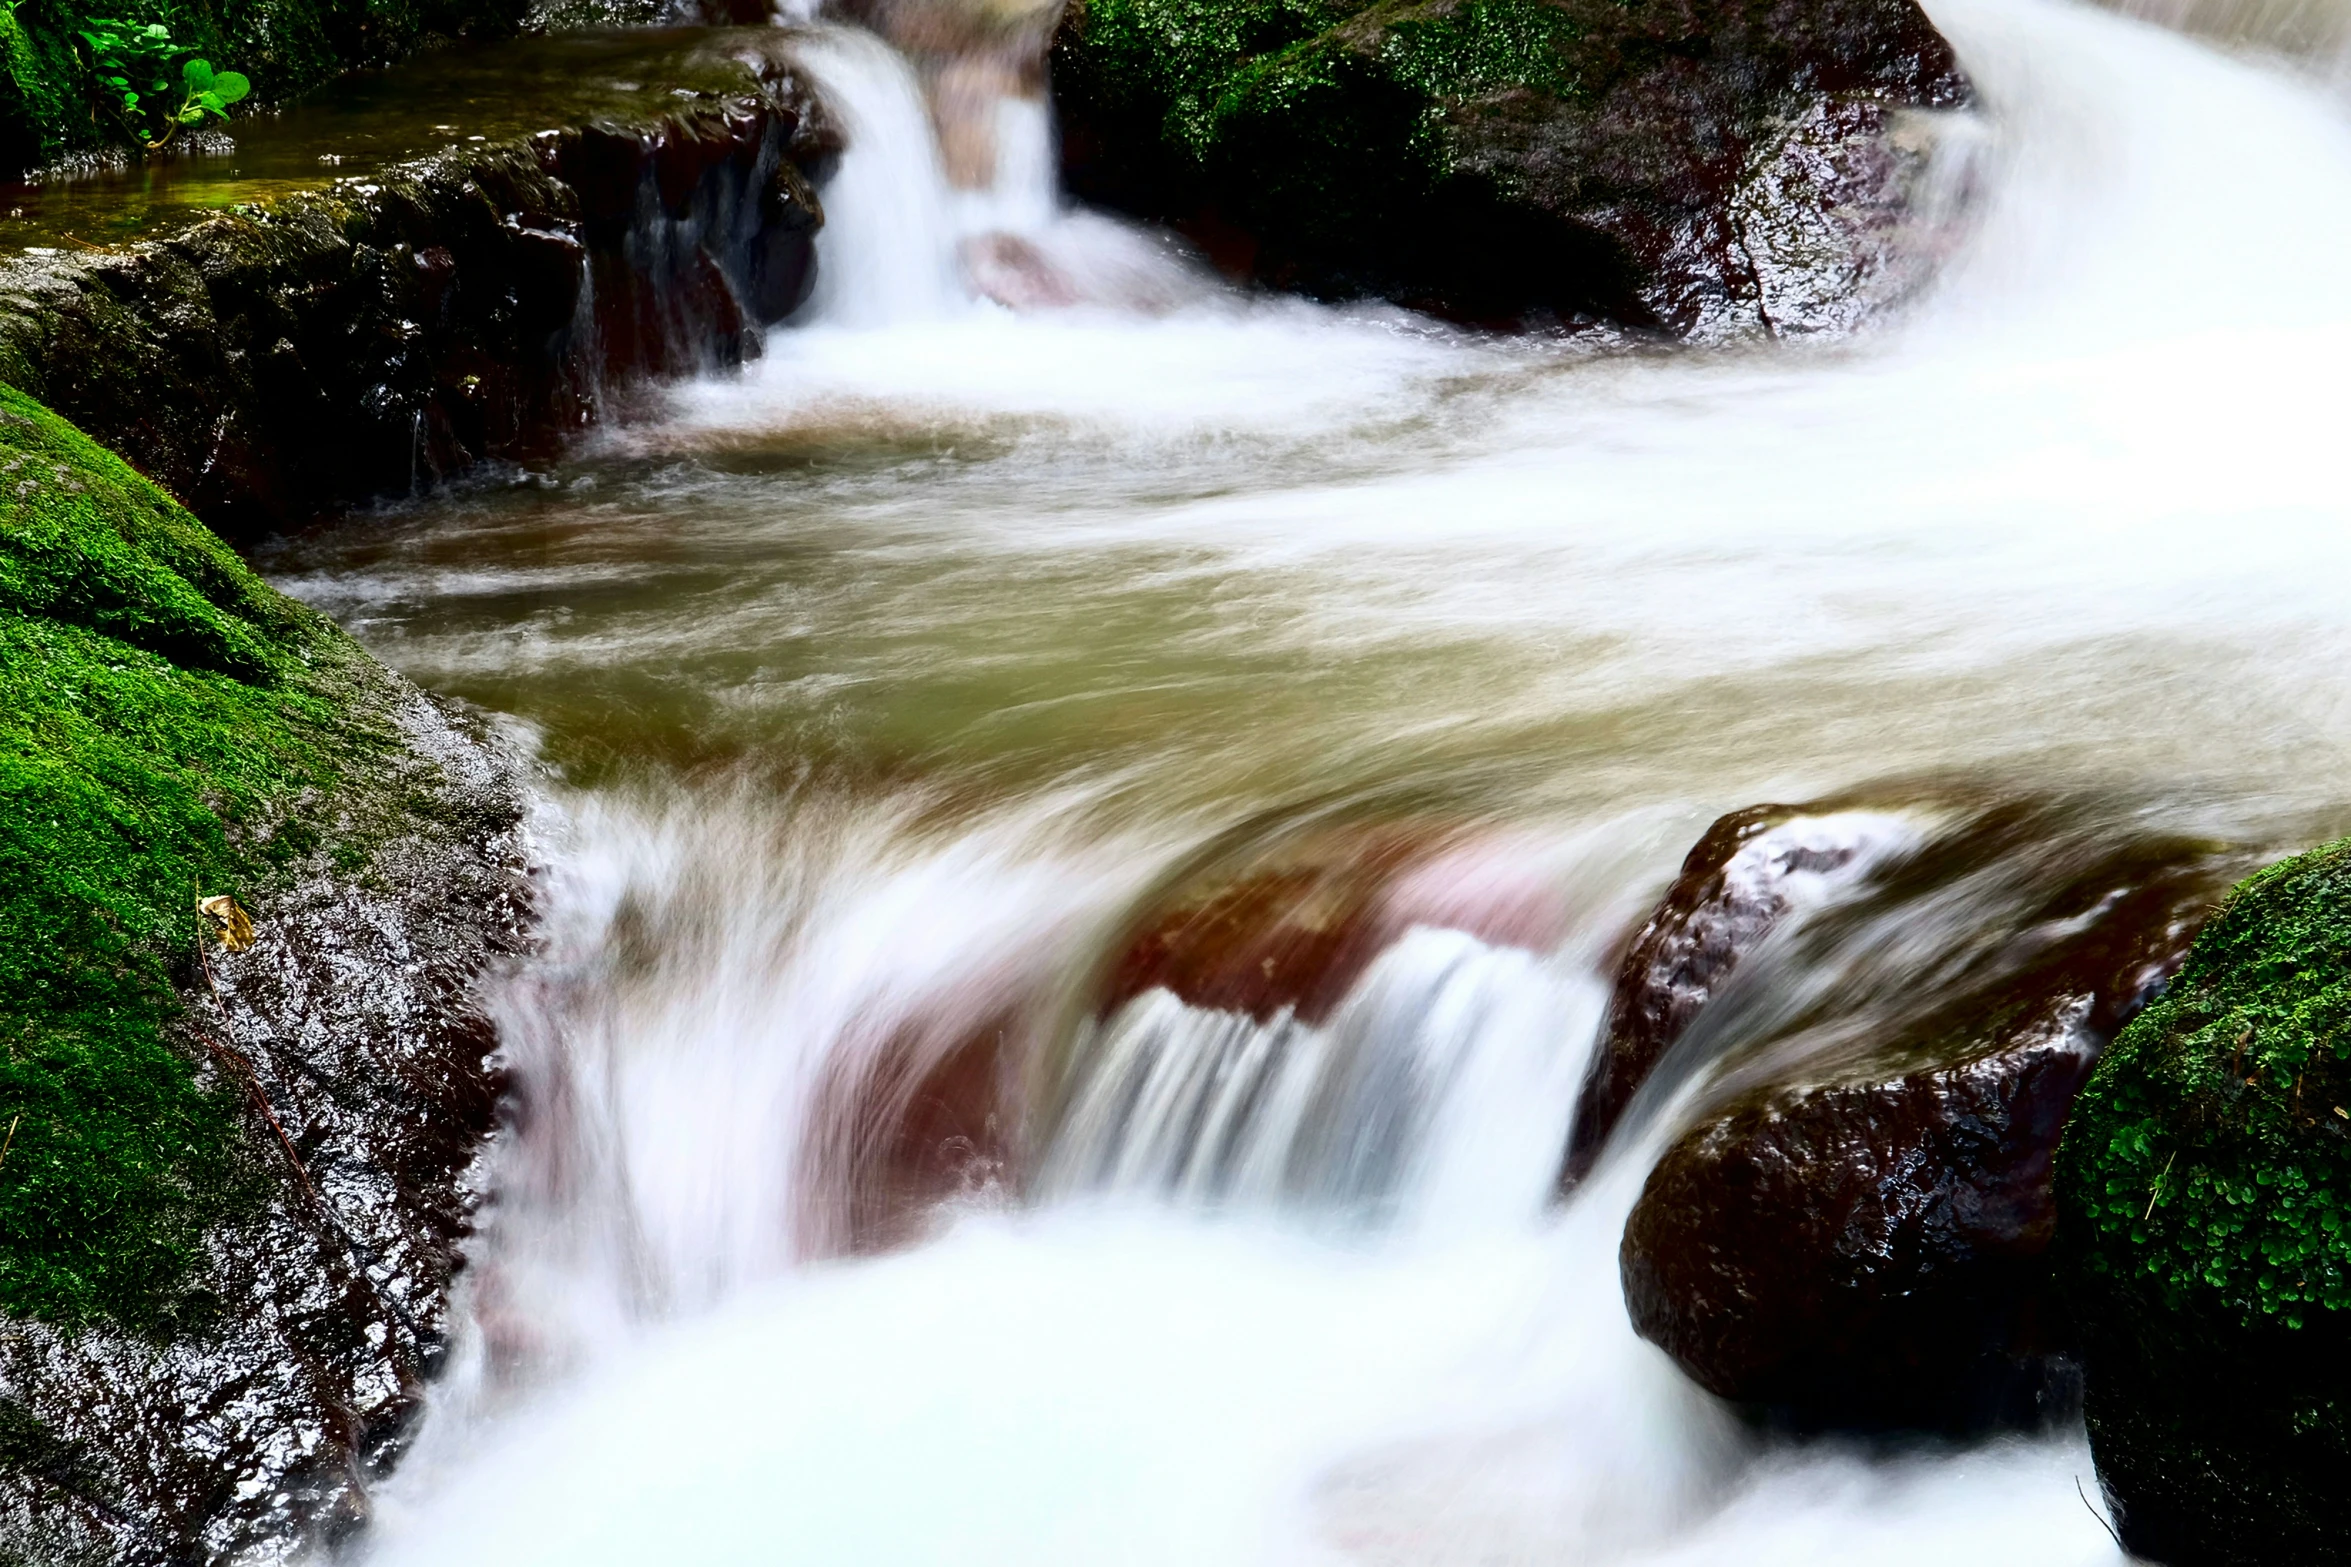 waterfall cascades near mossy rocks in stream